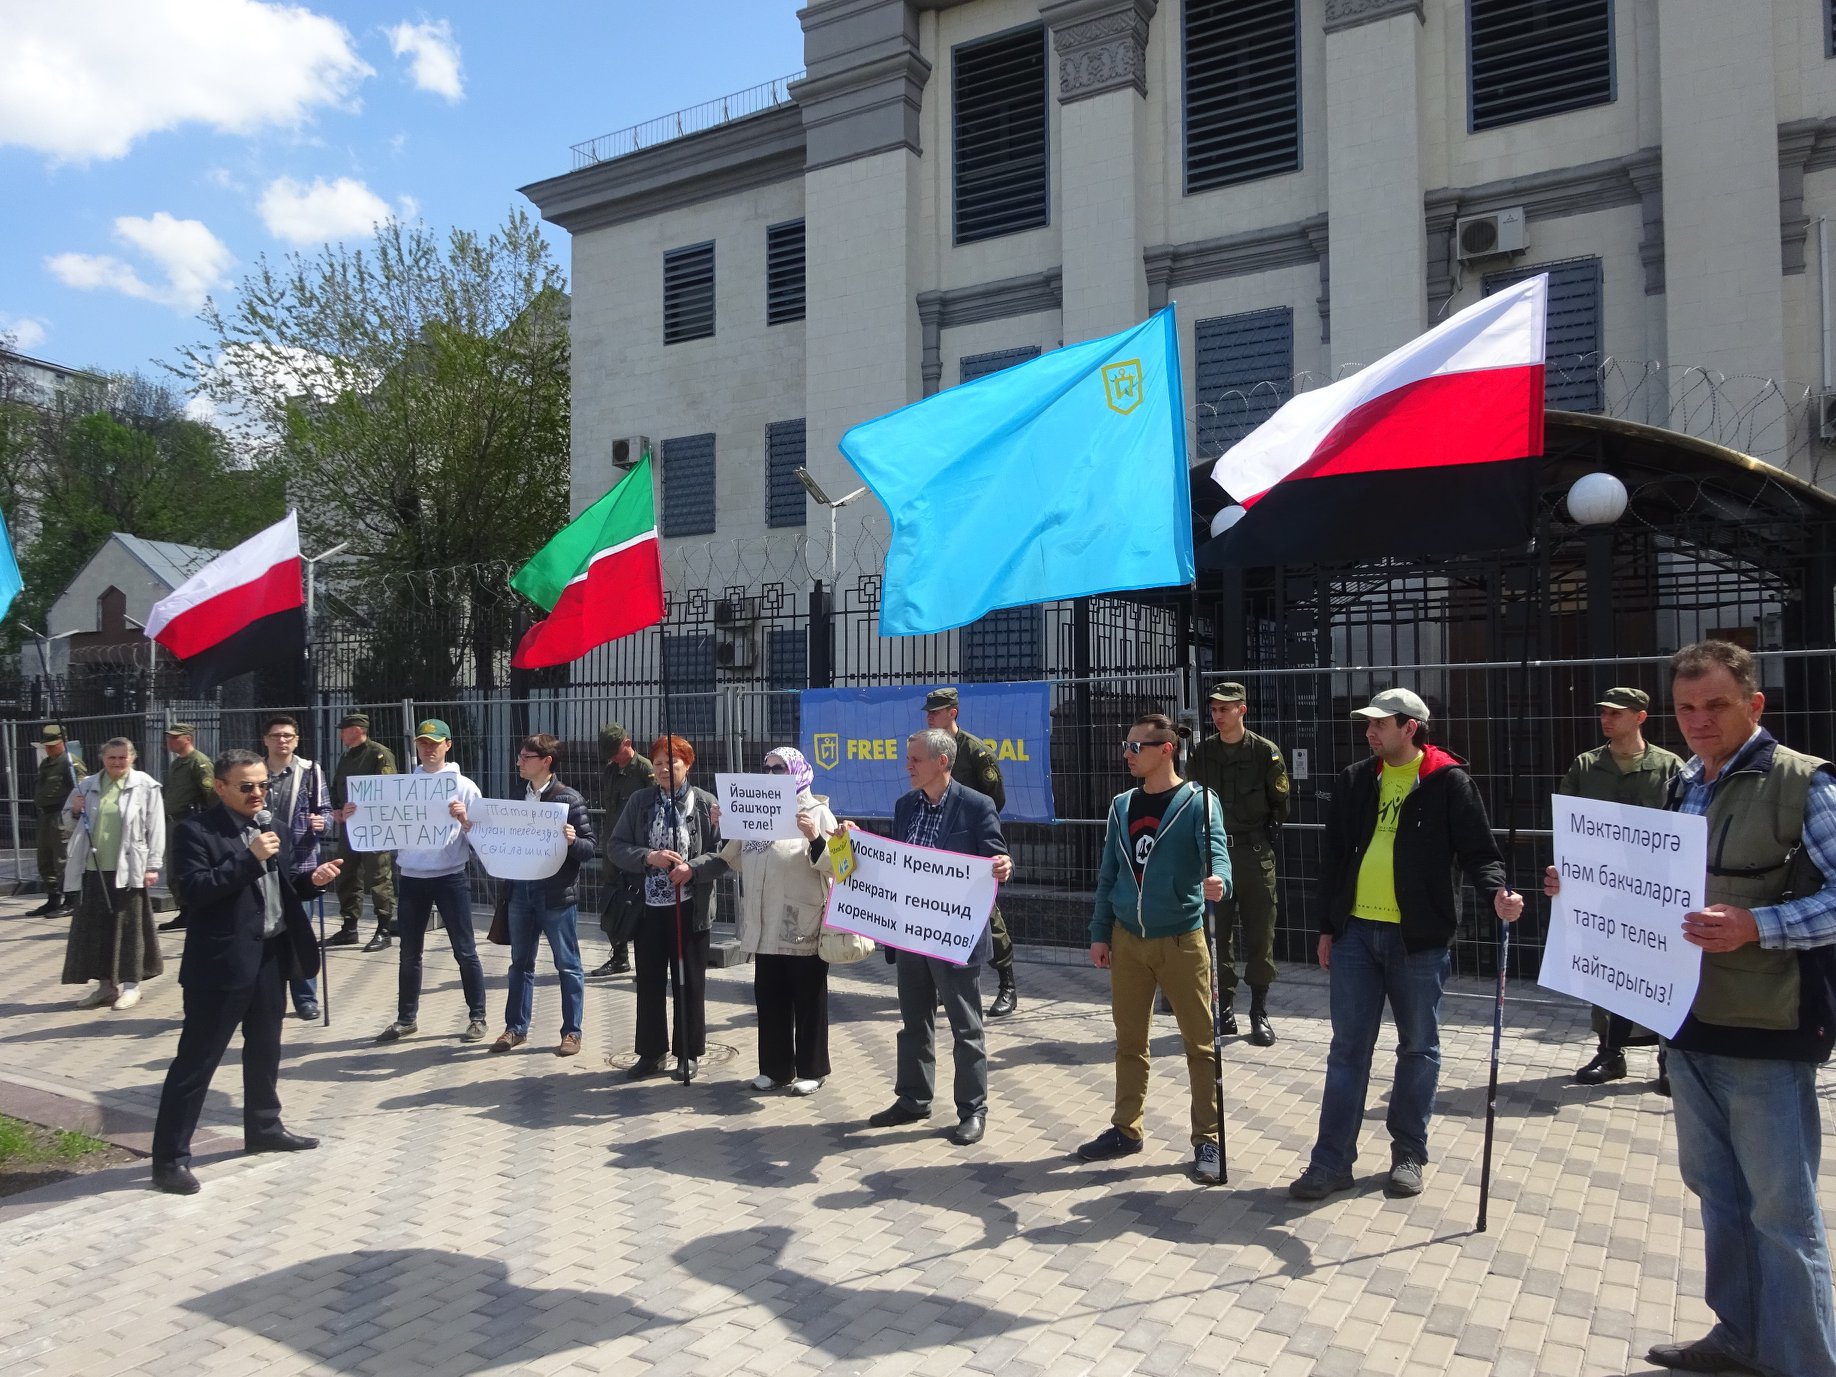 Moscou a déclaré «Idel-Oural Libre» comme une organisation indésirable en Fédération de Russie. Qu’est-ce qui se cache derrière ça ?